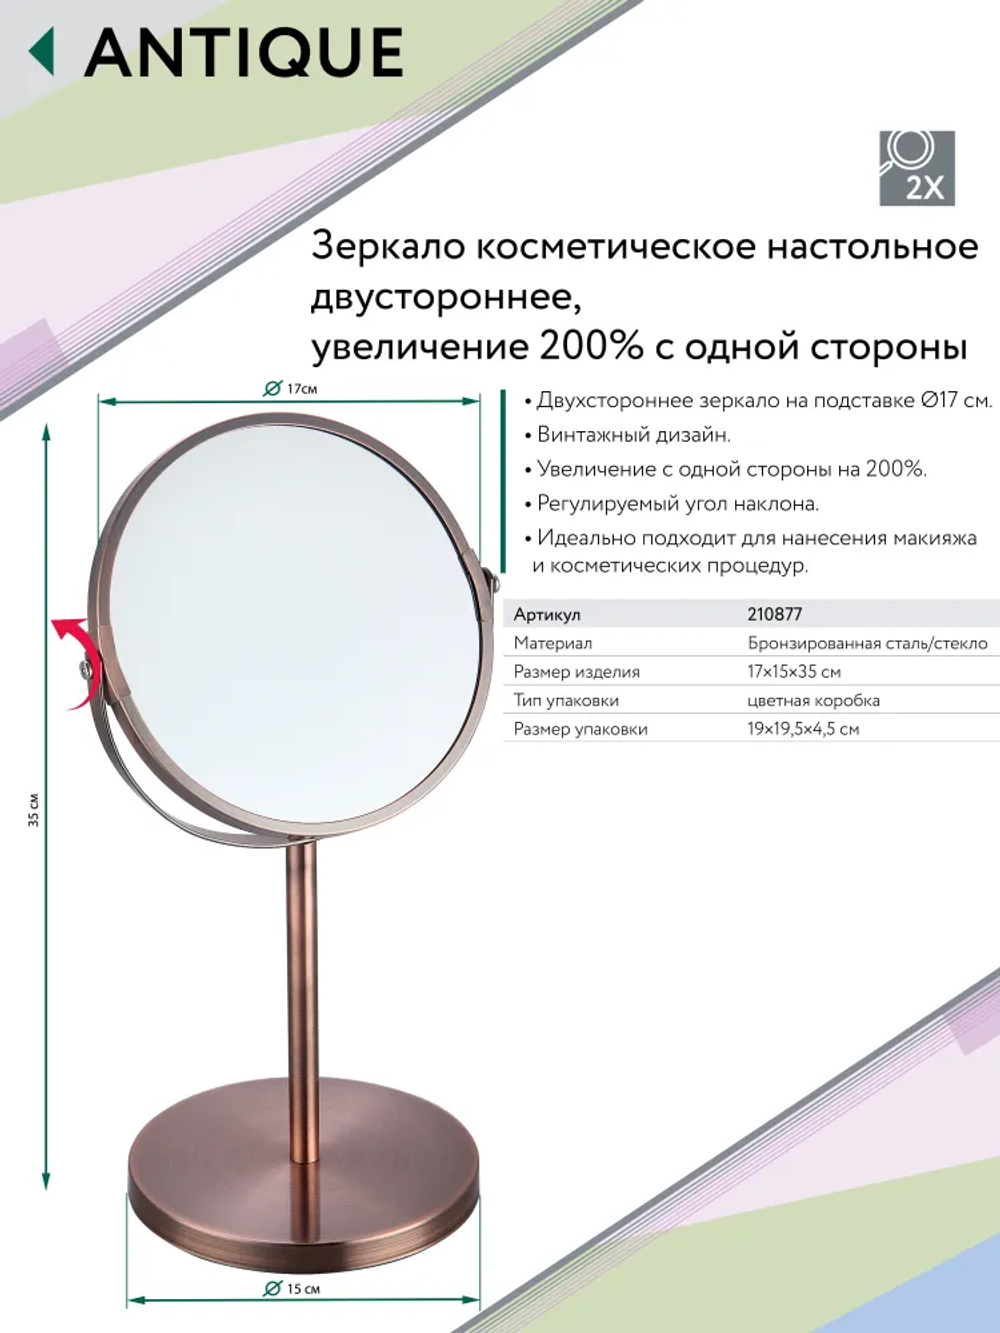 ANTIUQ Зеркало косметическое для ванной D 17 см.